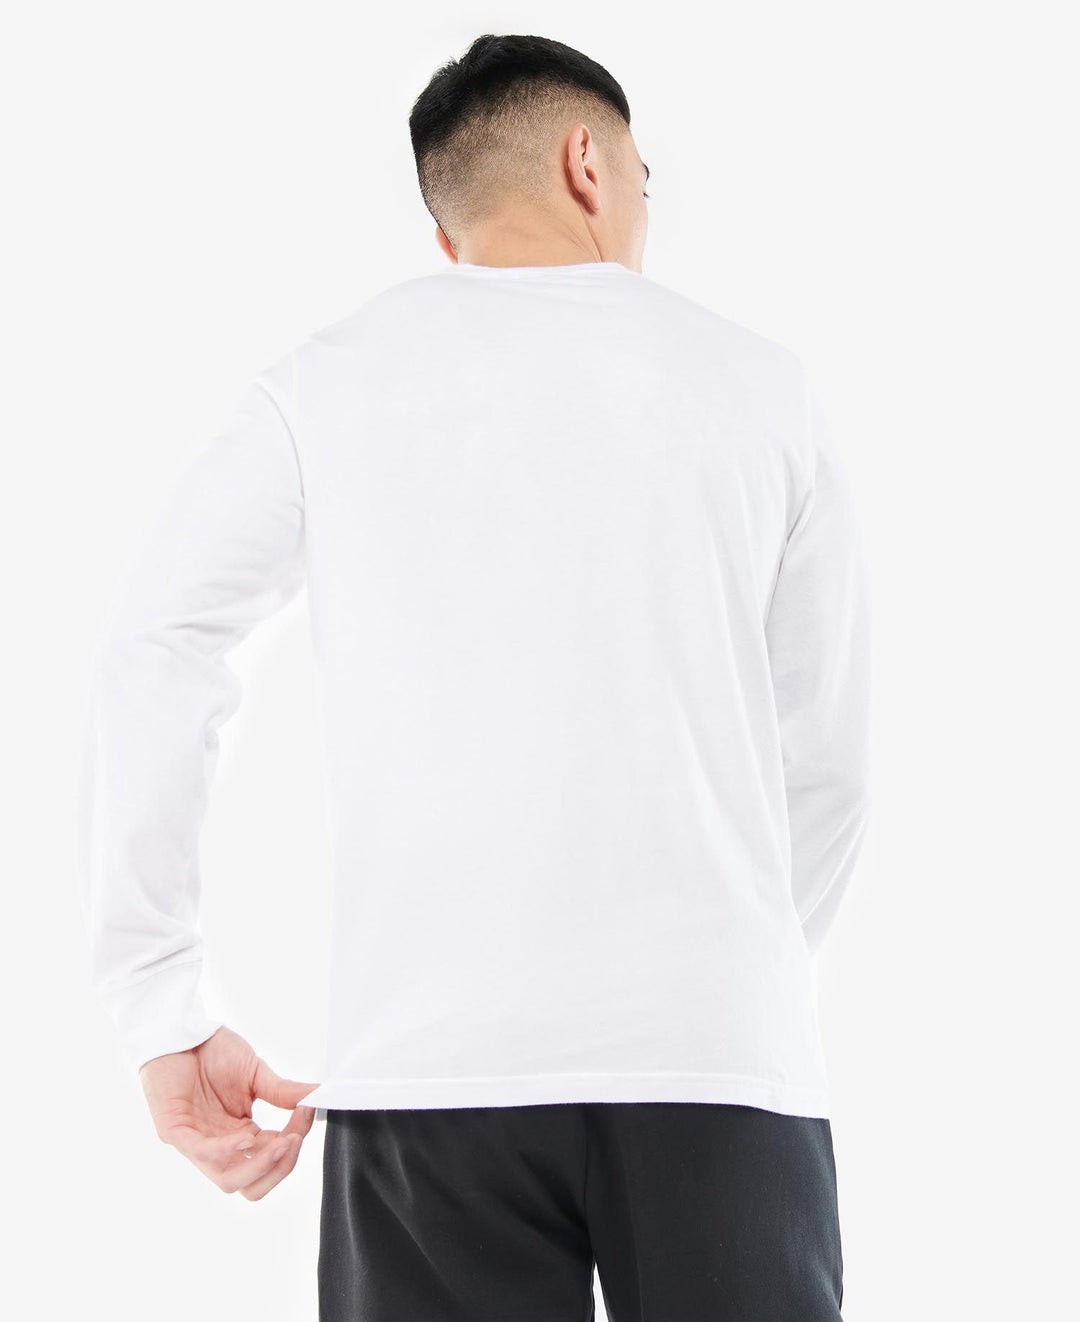 B.Intl Haxby T-Shirt/Majica MTS1078